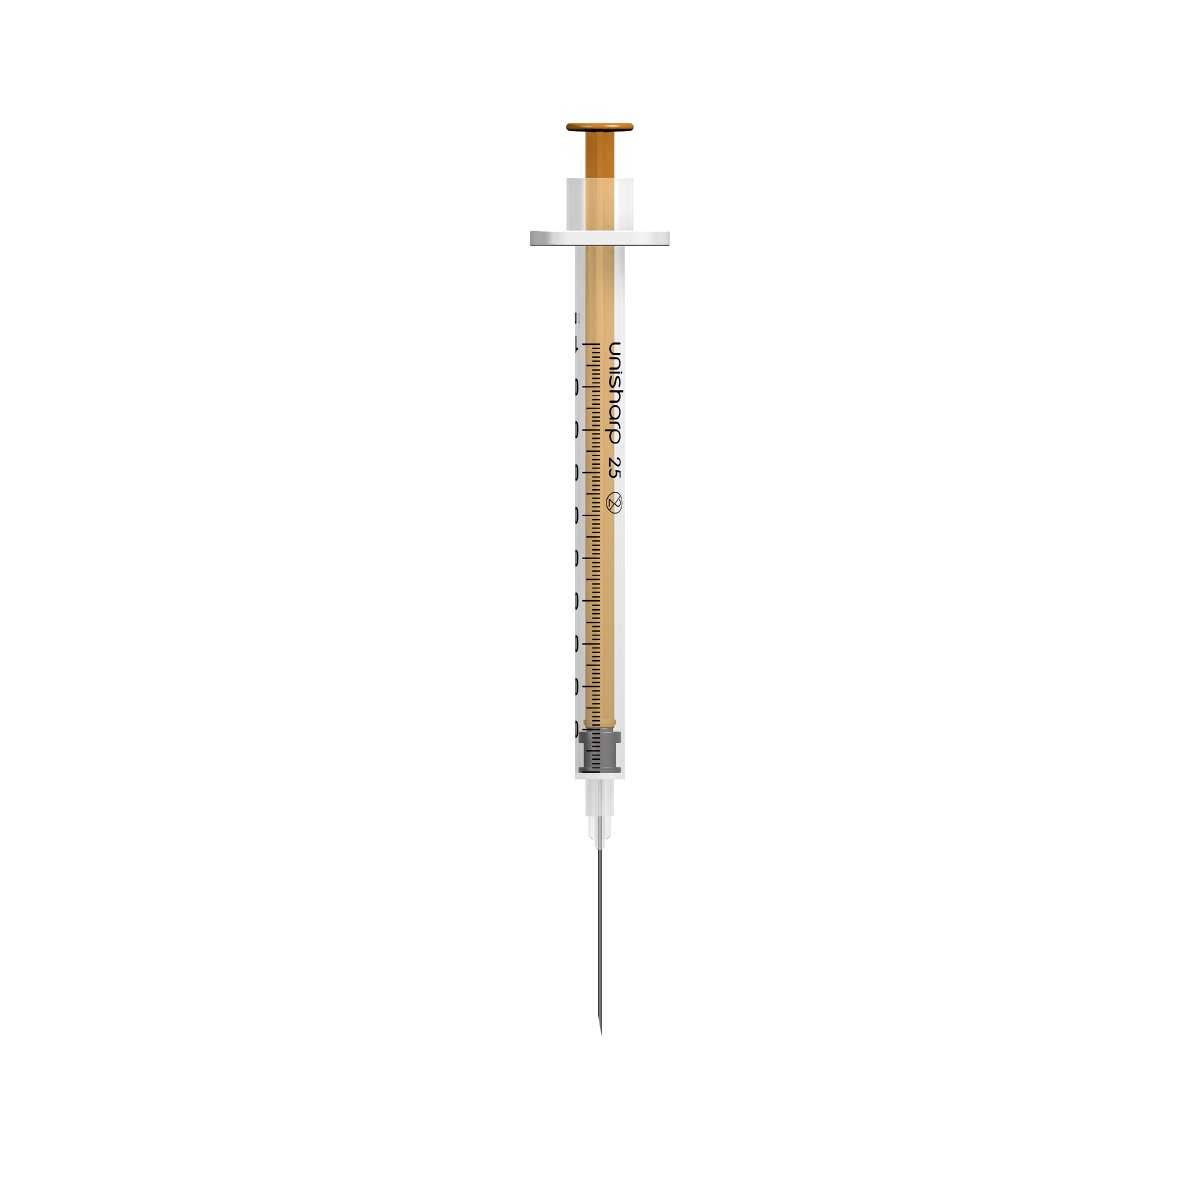 Unisharp - 1ml 25mm 25g Unisharp Syringe and Needle u100 - U2525 UKMEDI.CO.UK UK Medical Supplies